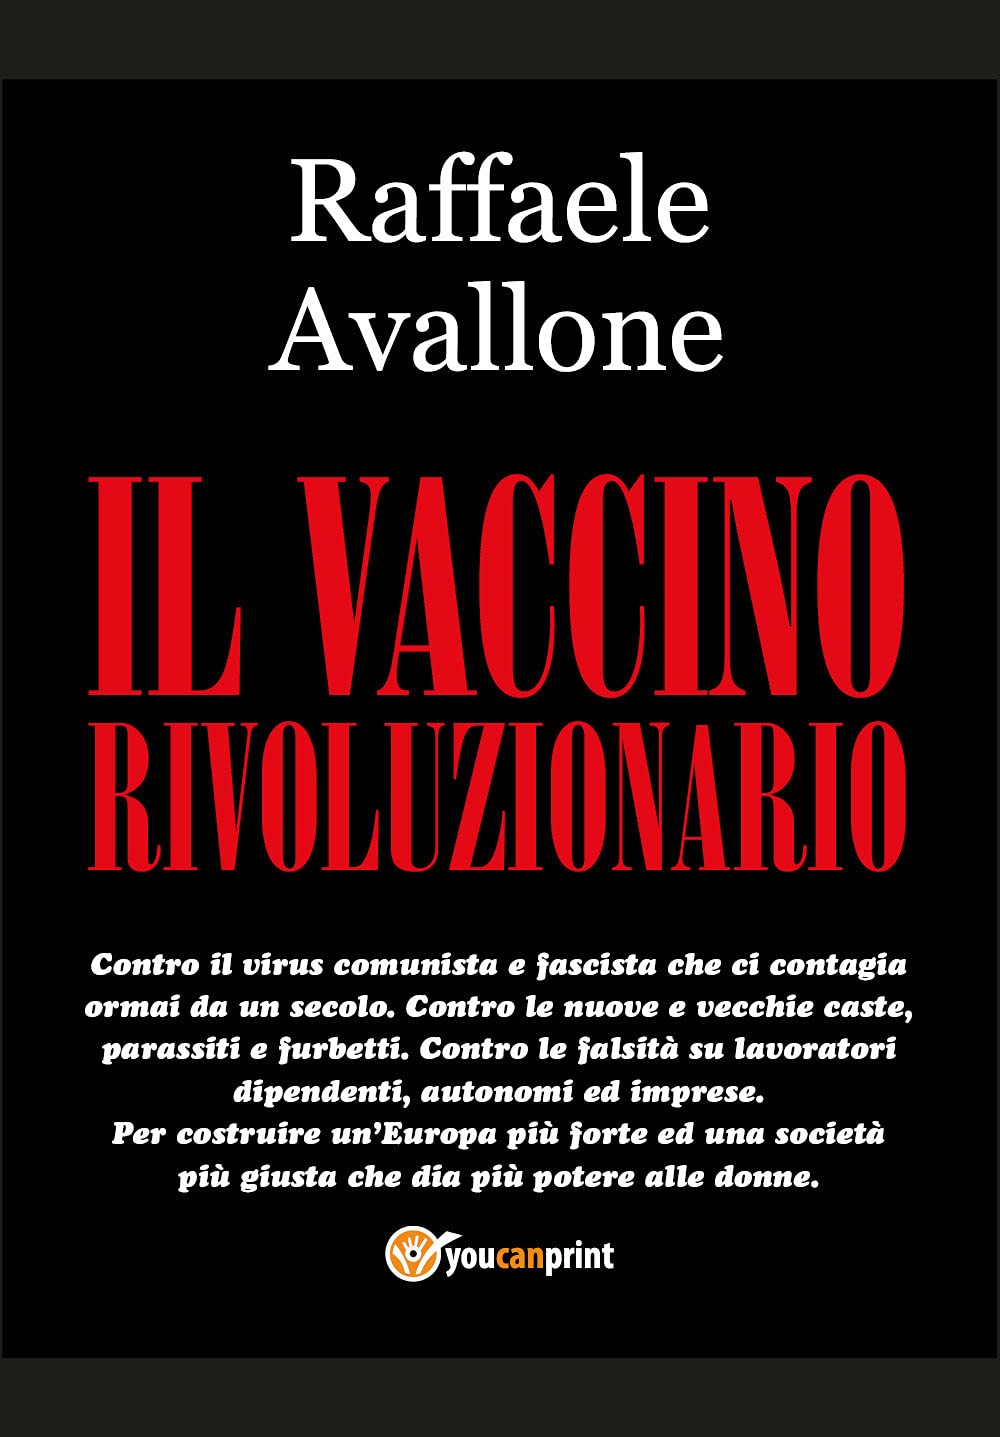 Il Vaccino Rivoluzionario